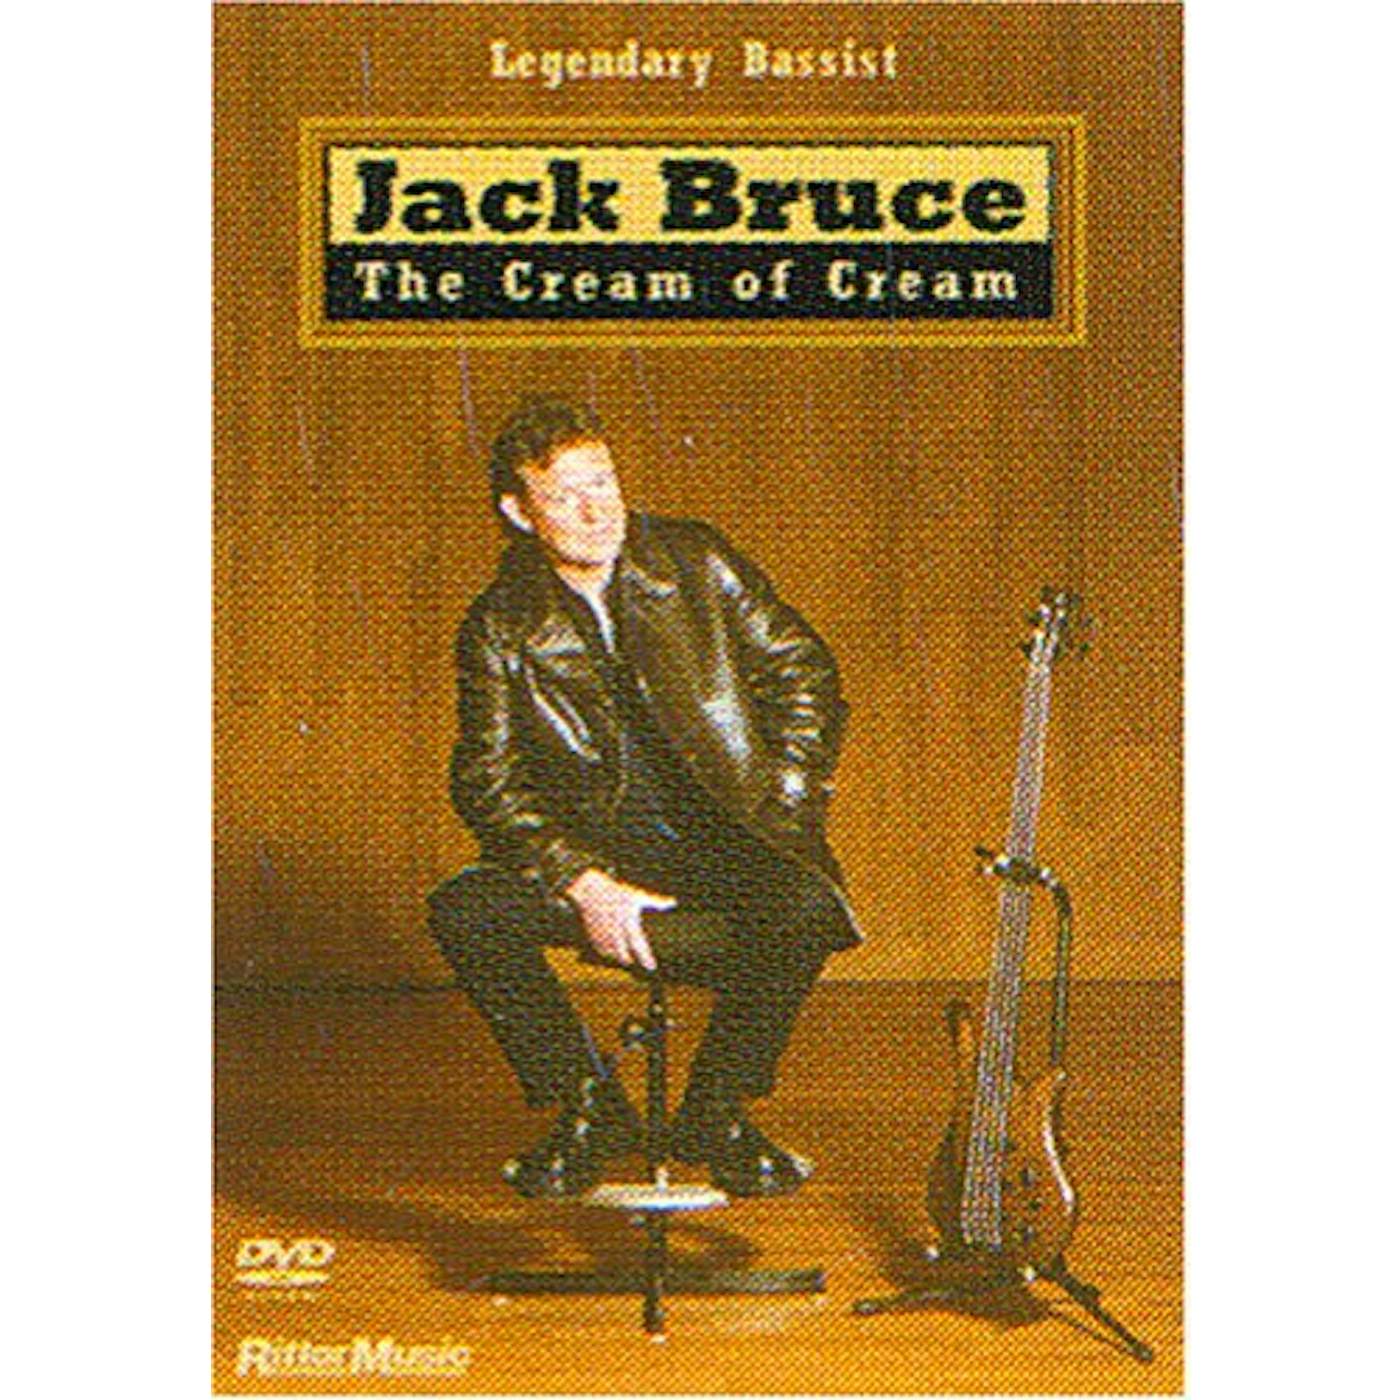 Jack Bruce CREAM OF CREAM DVD